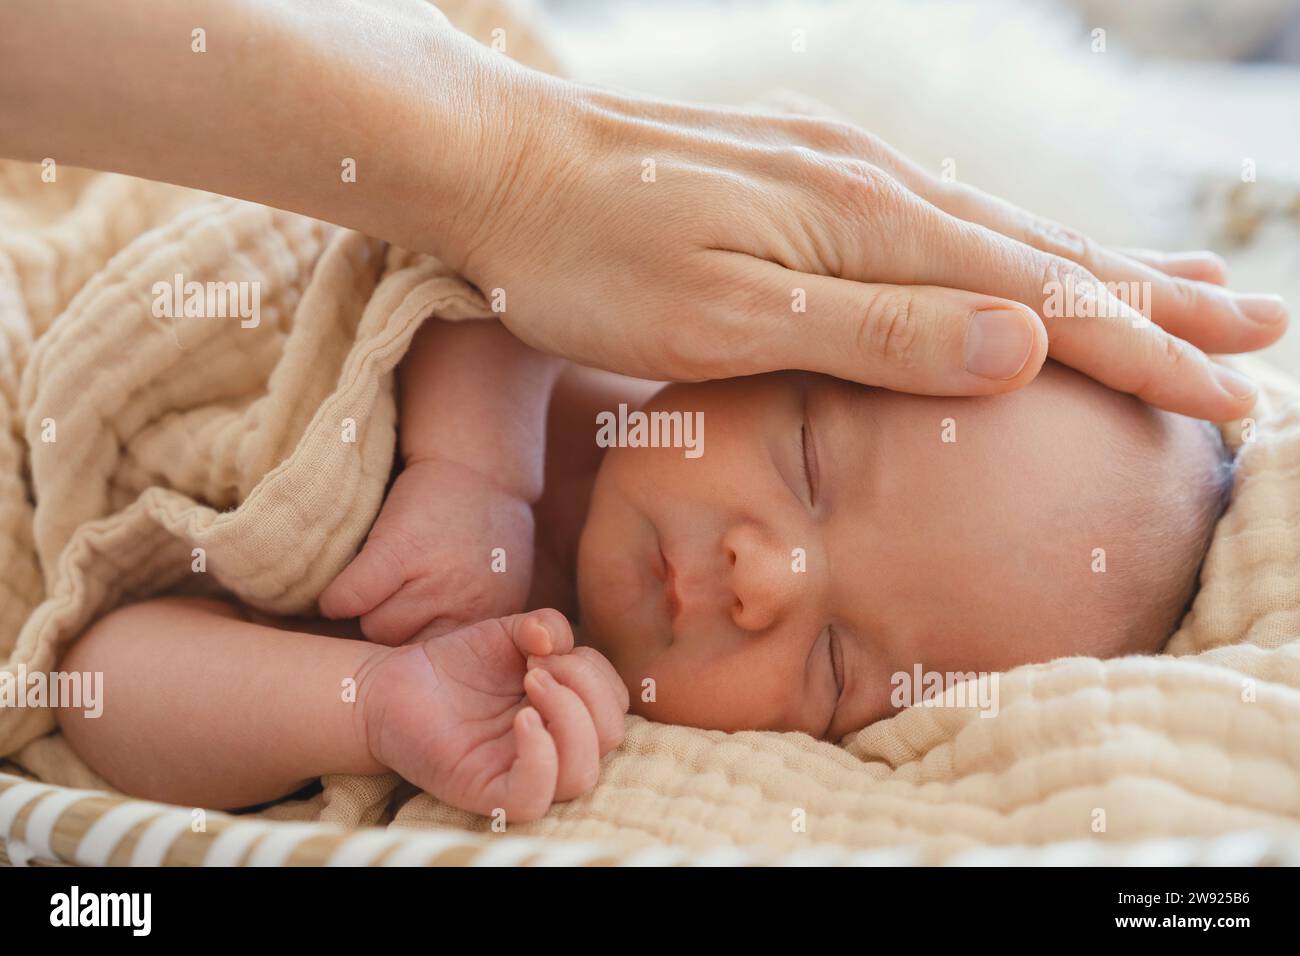 La madre amorevole tocca delicatamente il figlio neonato avvolto in una coperta Foto Stock